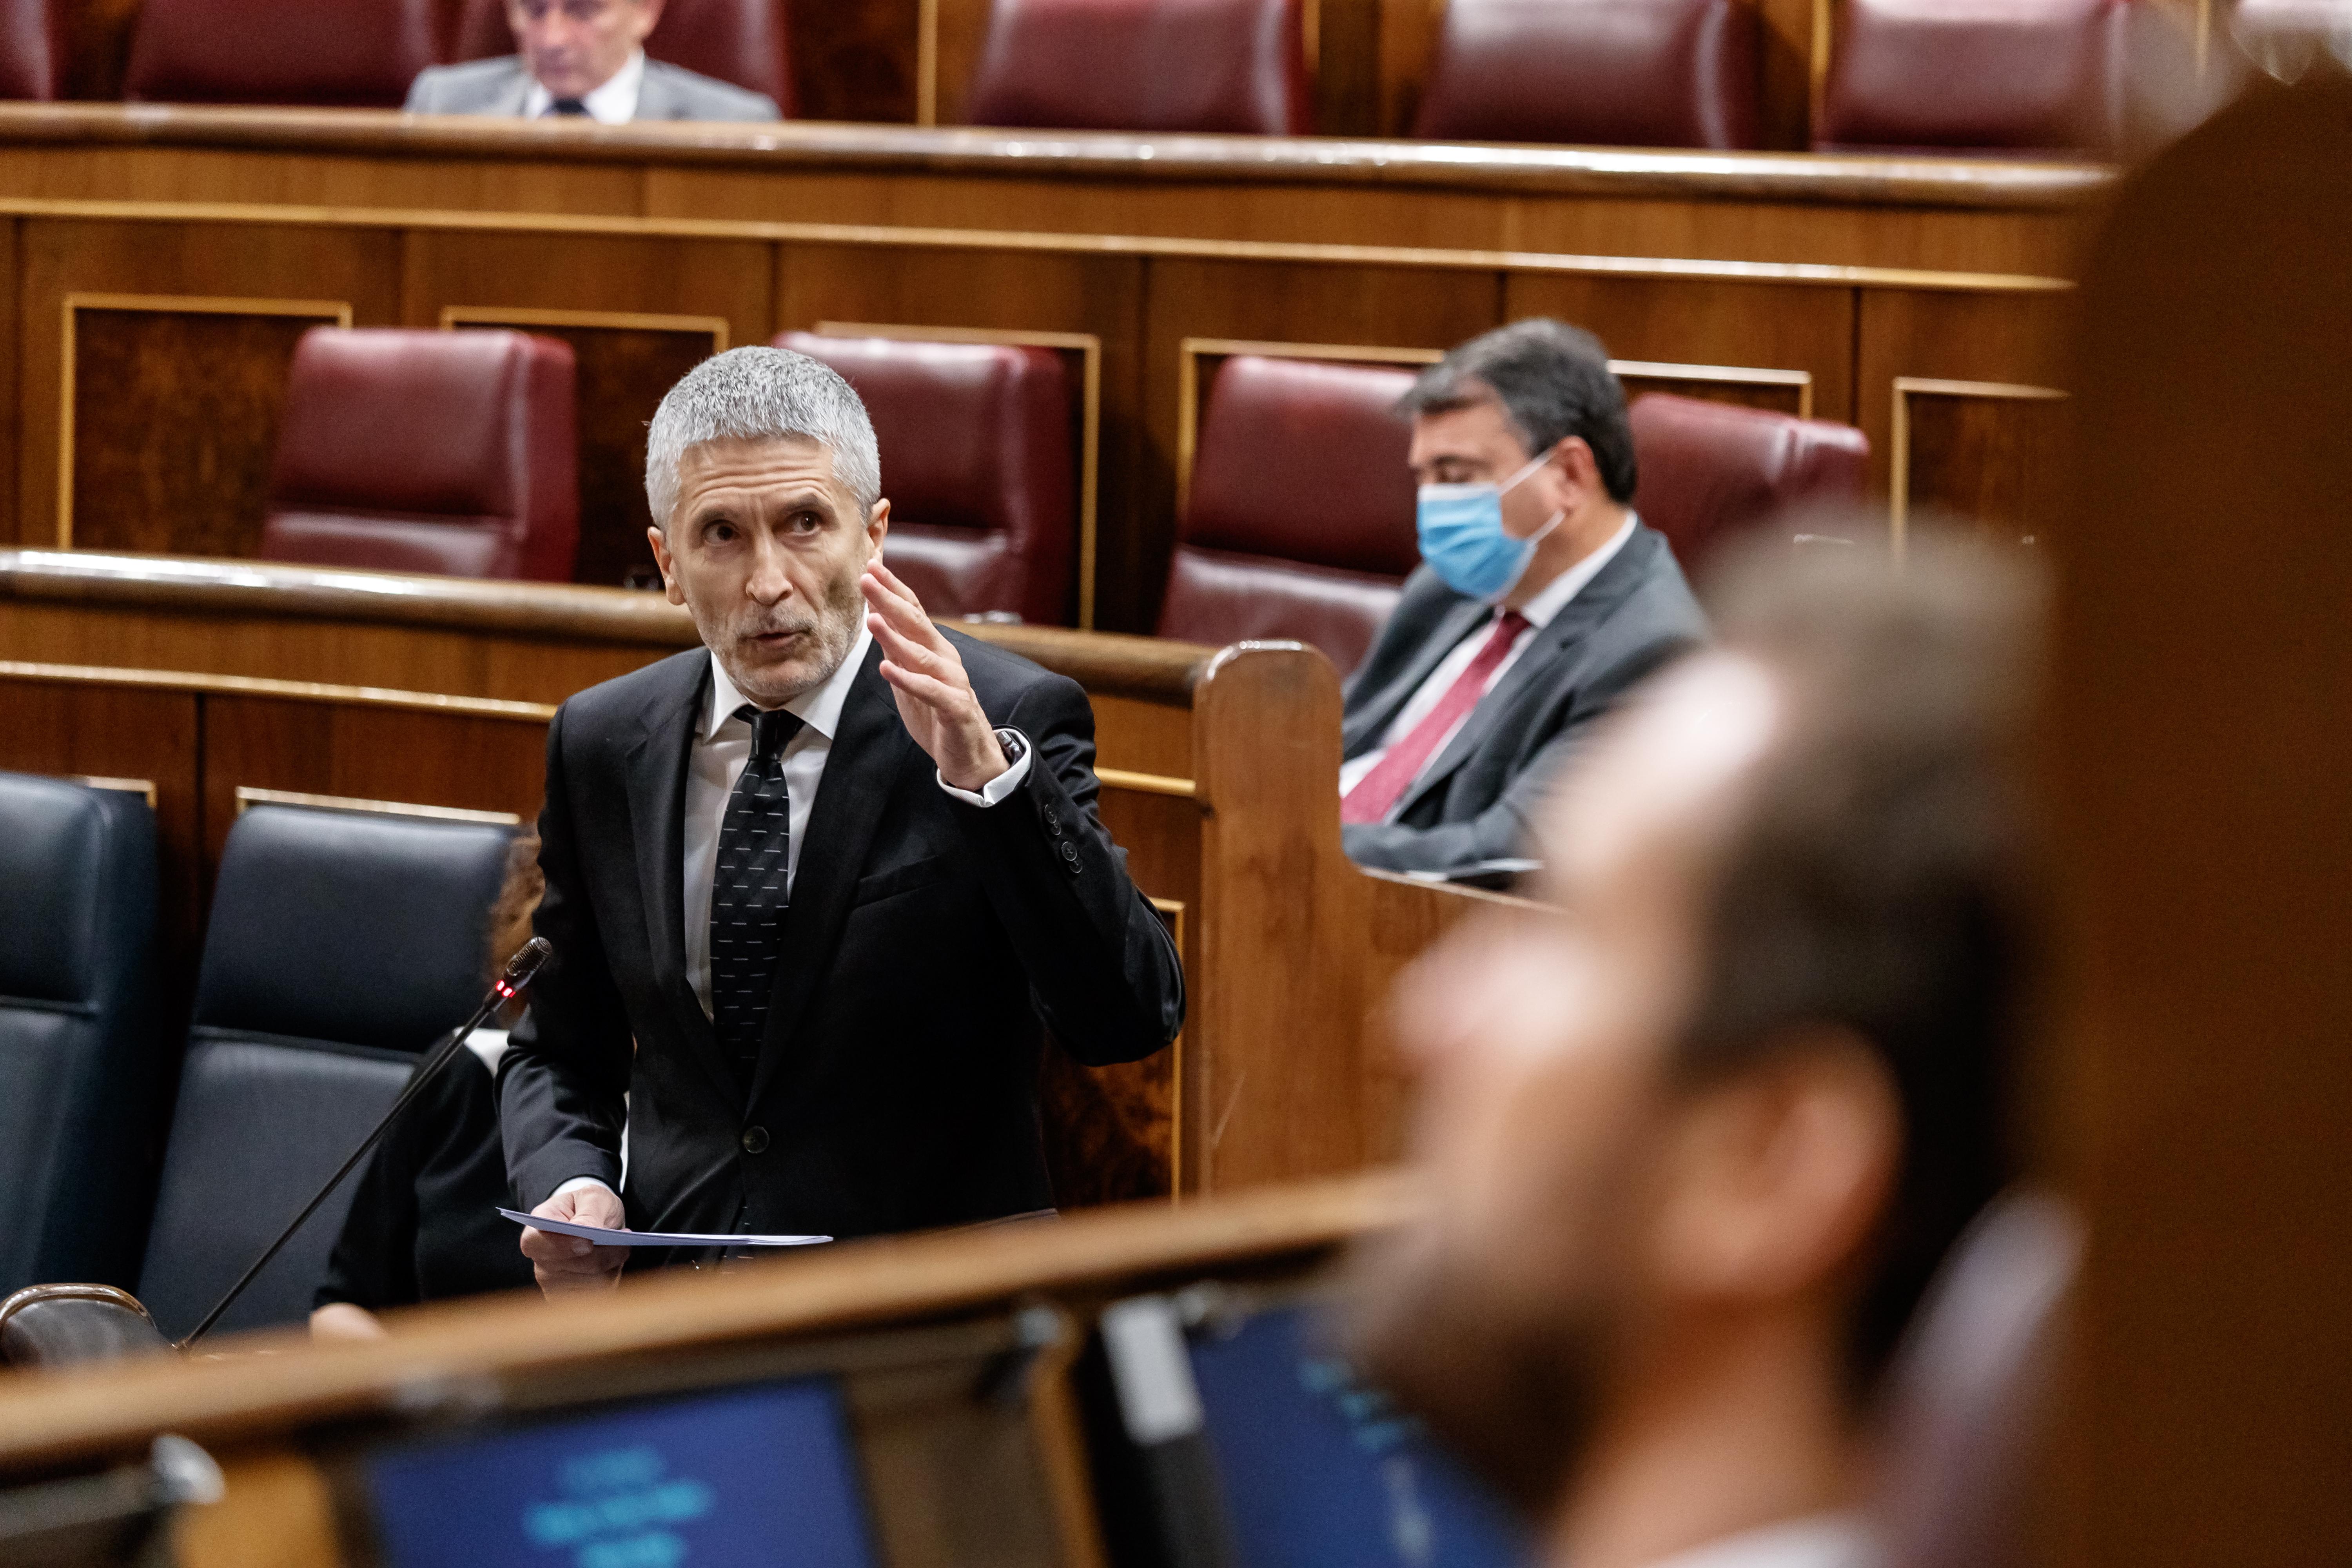  El ministro del Interior, Fernando Grande-Marlaska, durante la sesión de control al Gobierno en la que se ha cuestionado su destitución del coronel Pérez de los Cobos, en Madrid